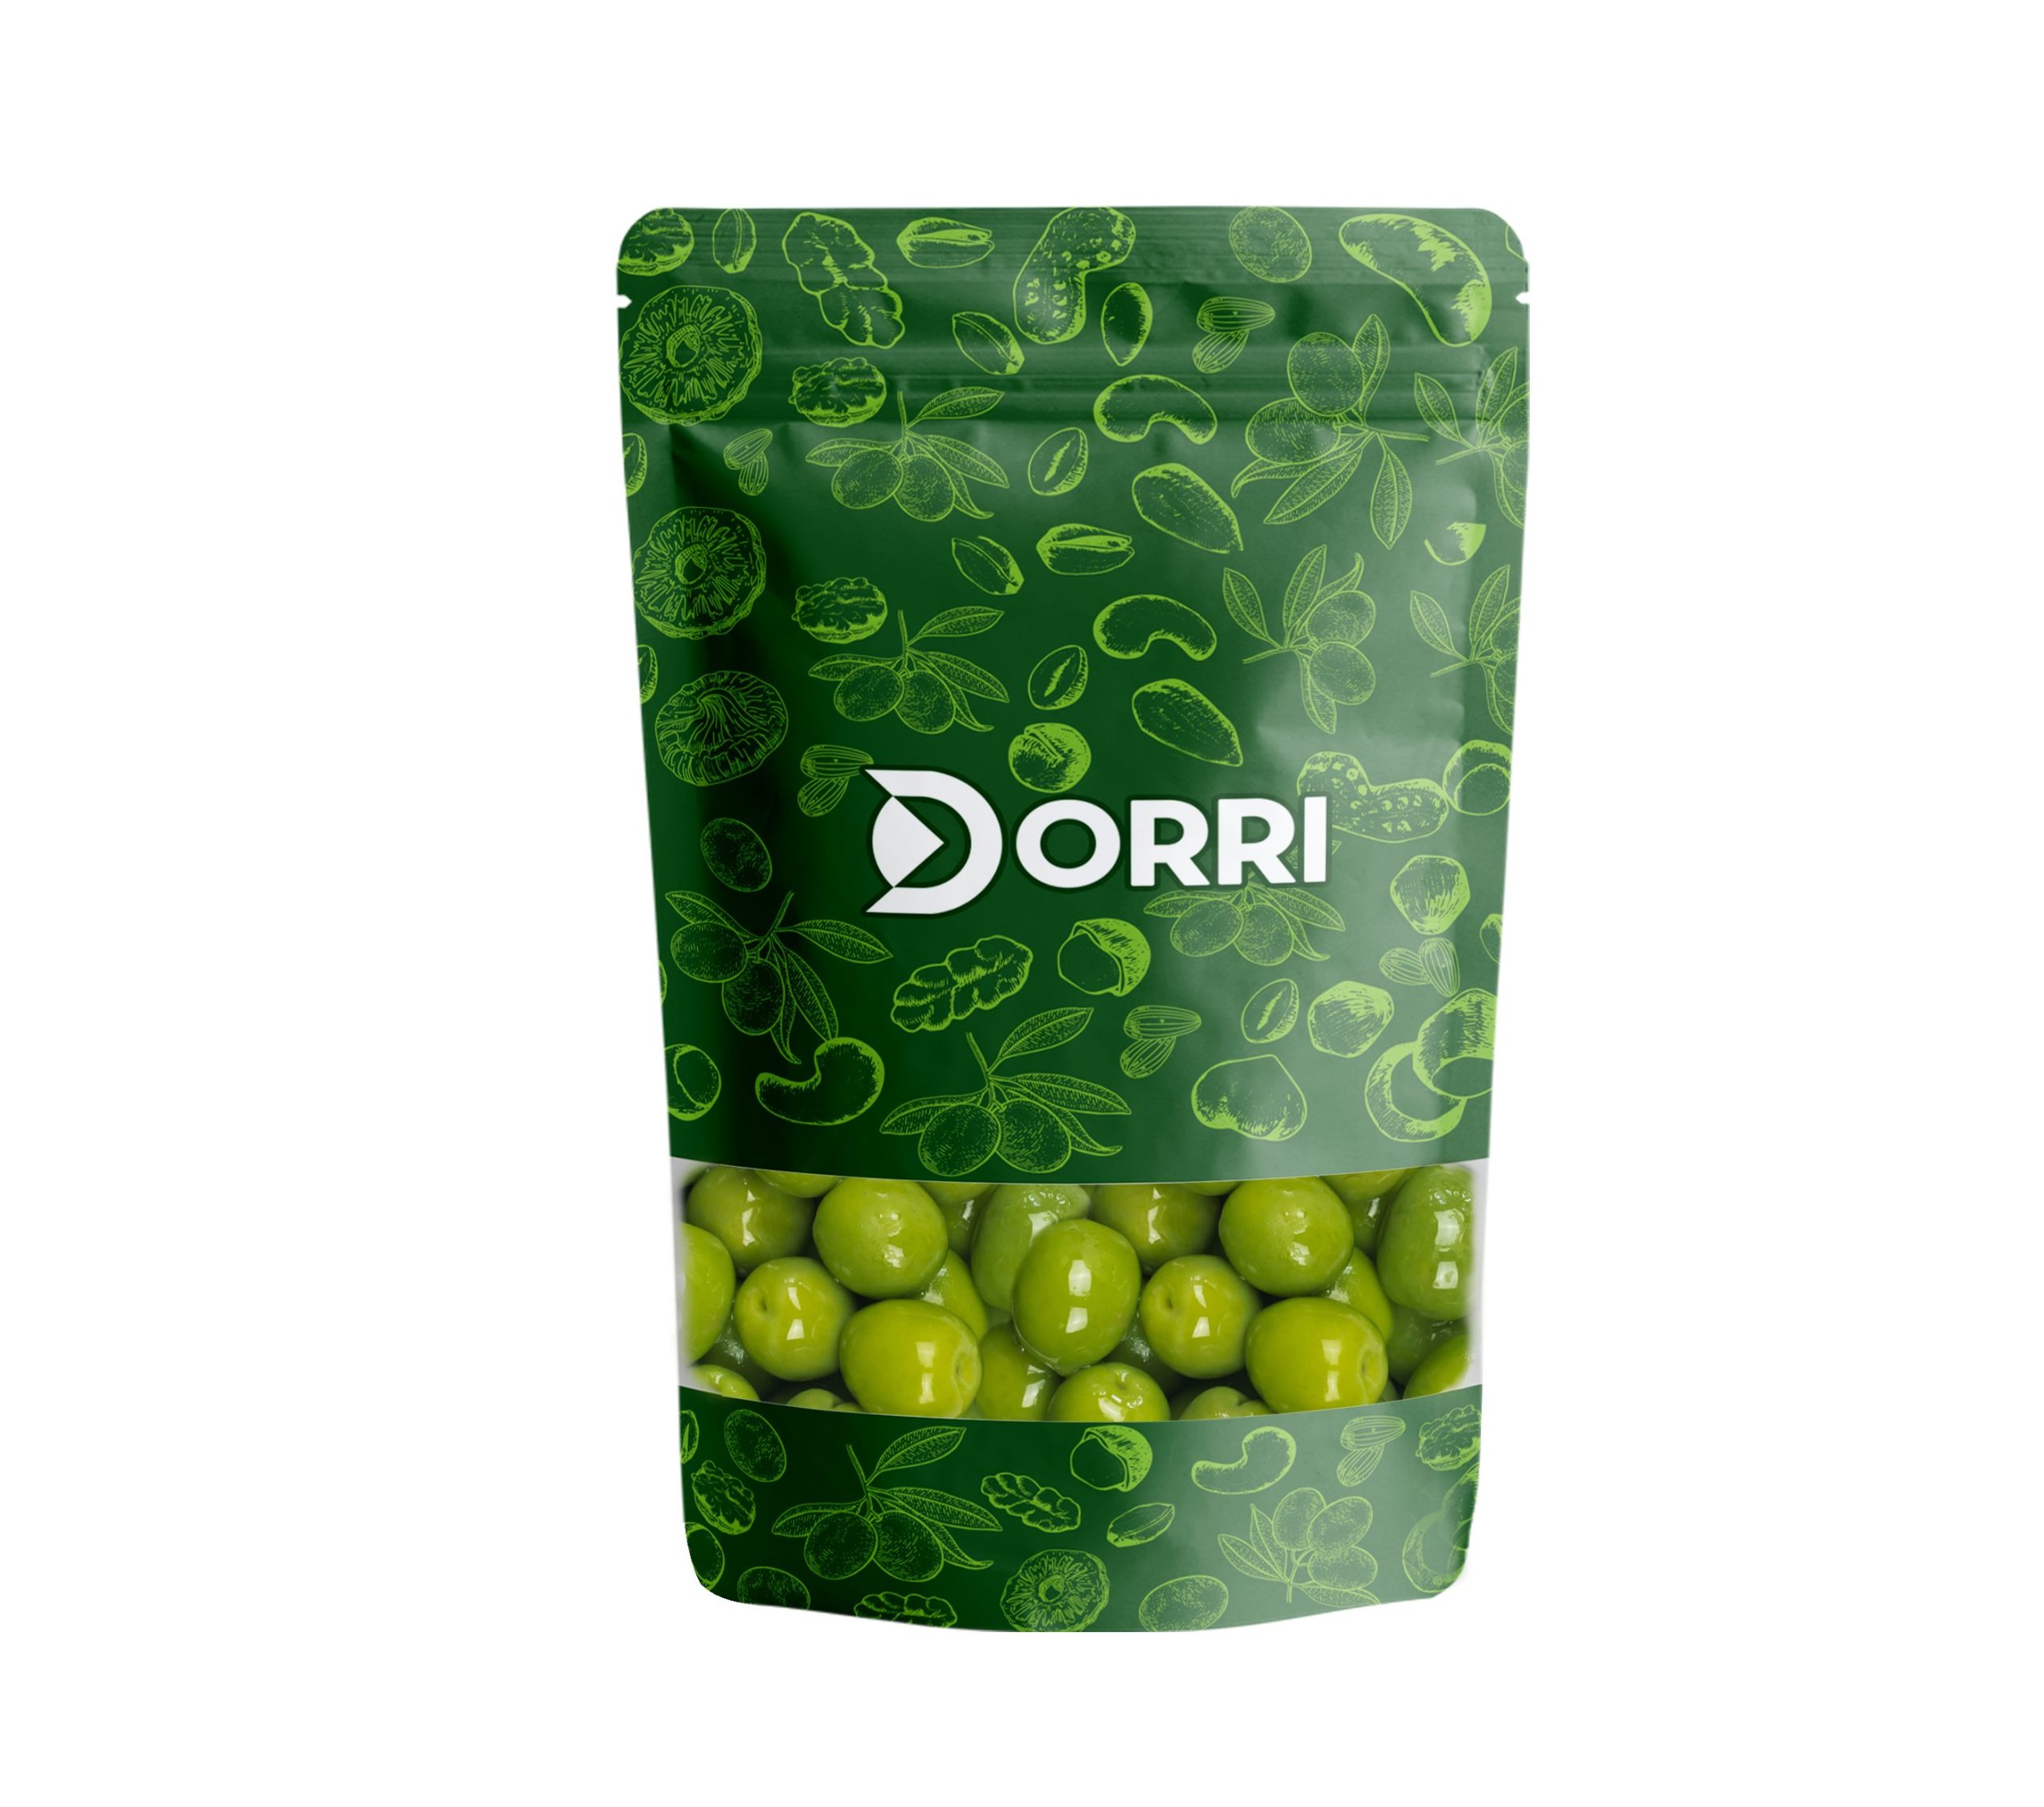 Dorri - Nocellara Olives (Sicilian)